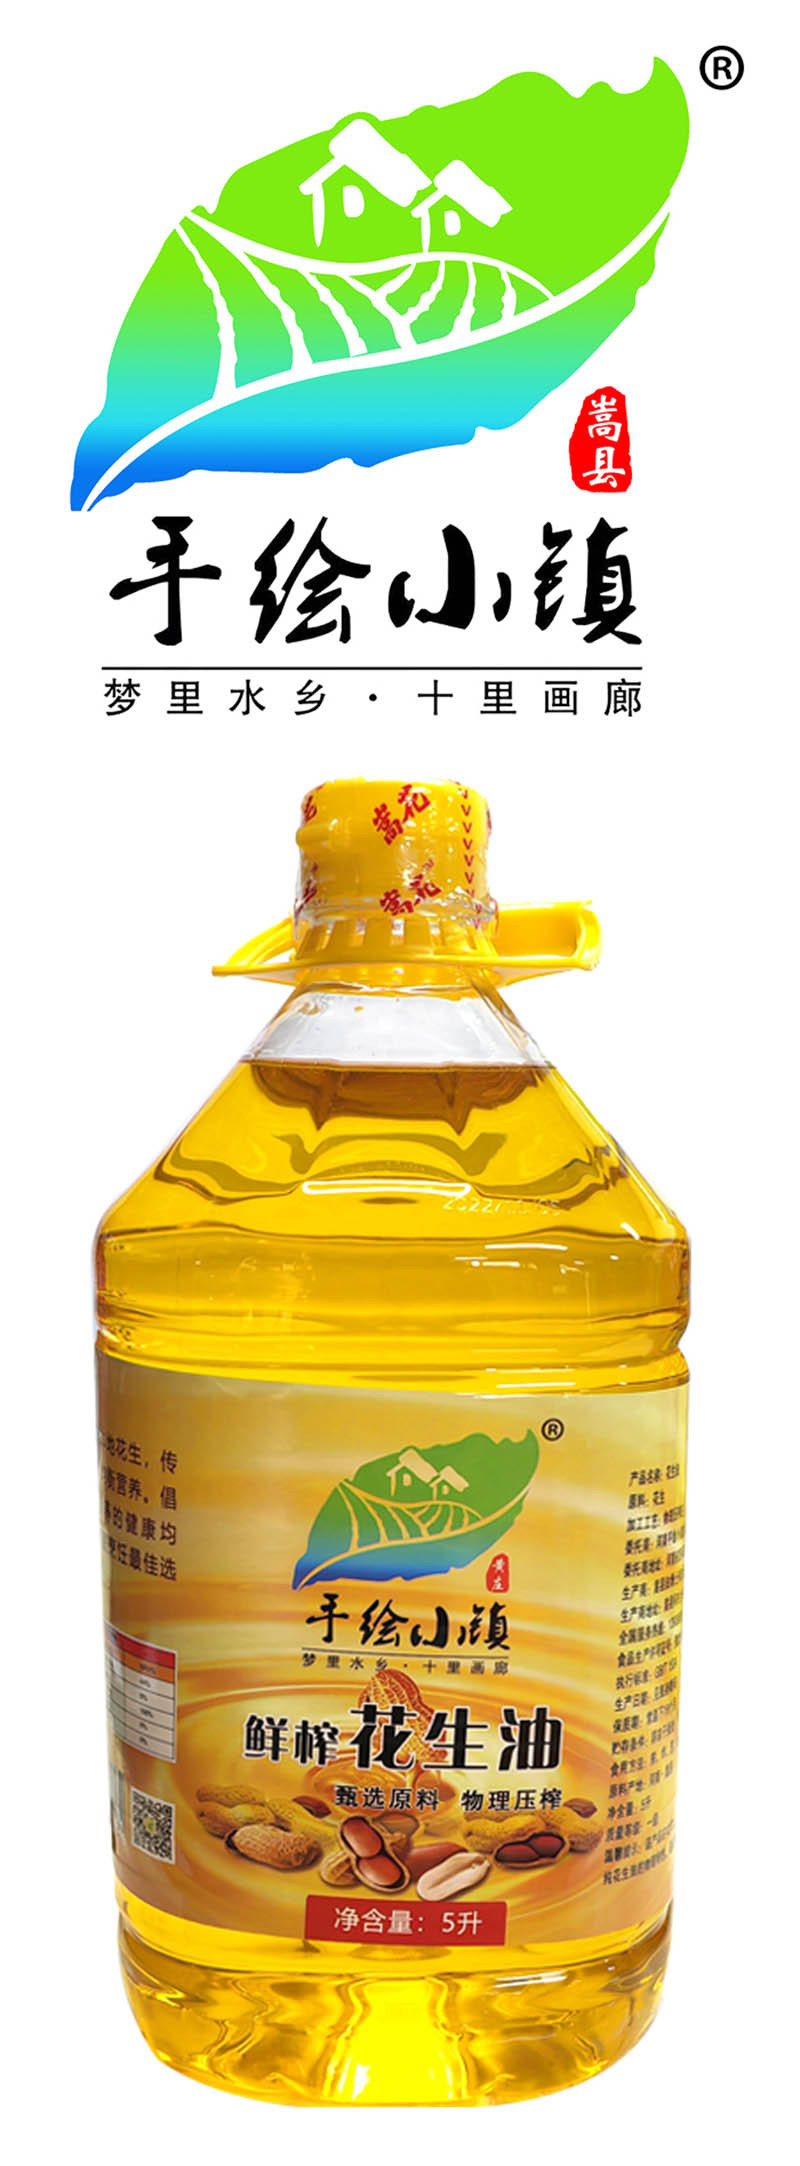  洛阳农品 手绘小镇 鲜榨花生油5L嵩县特产传统工艺低温压榨一级食用油